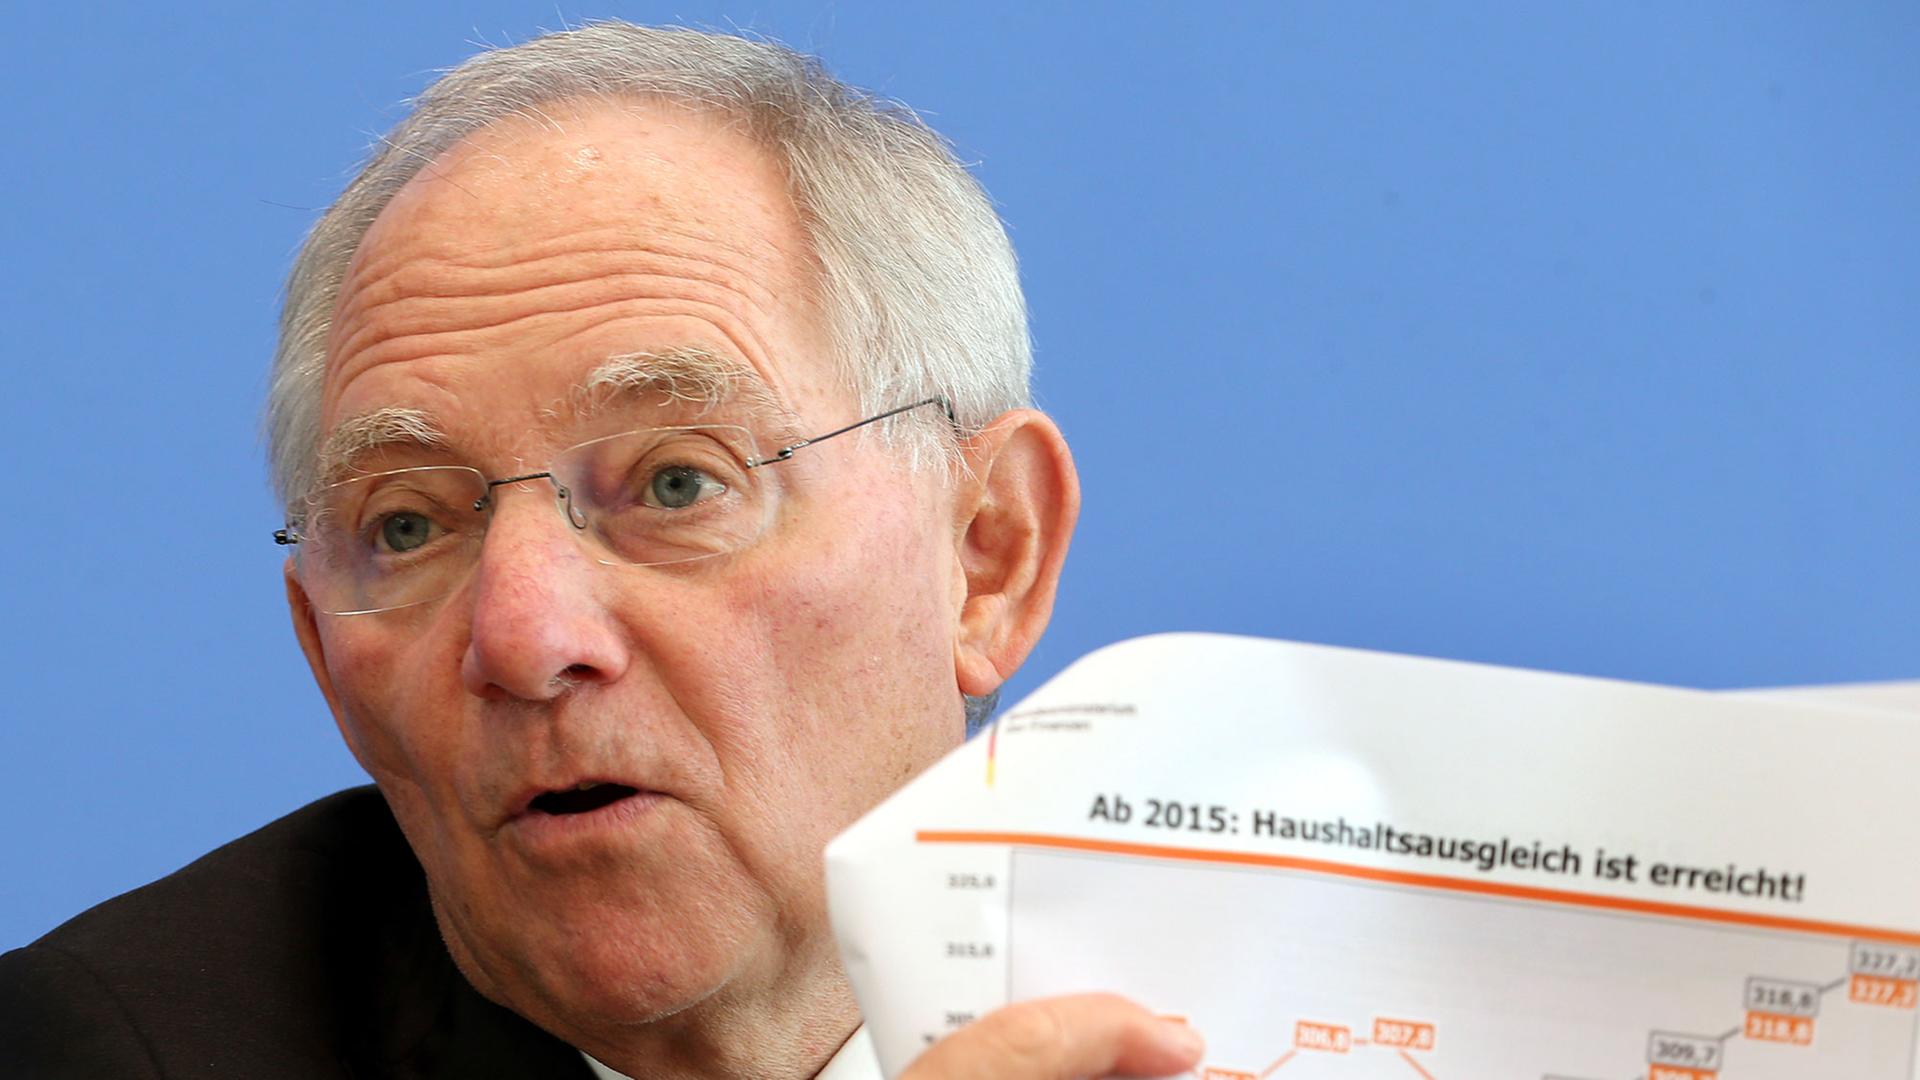 Bundesfinanzminister Wolfgang Schäuble (CDU) will ab 2015 einen ausgeglichenen Haushalt erreichen.